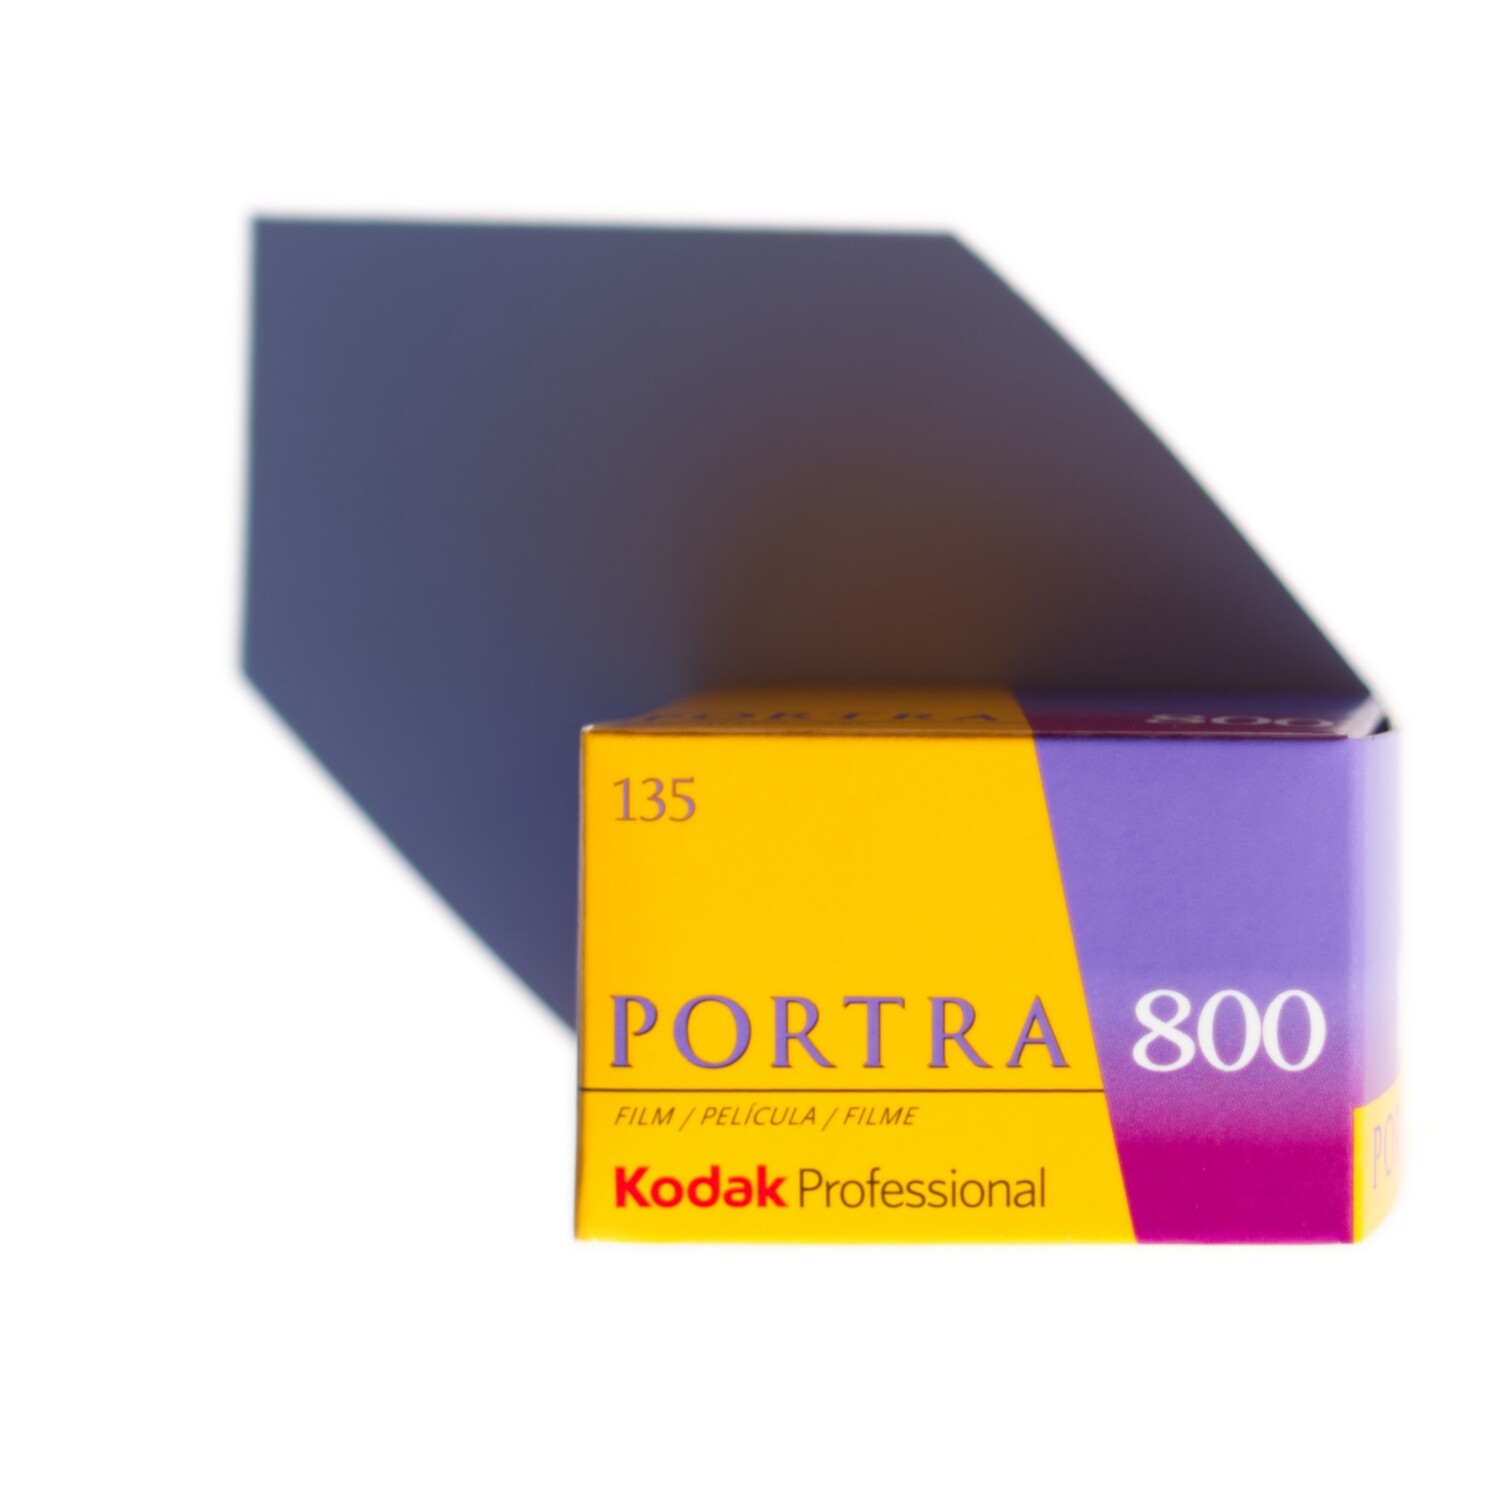 Kodak Professional Portra 800 35mm